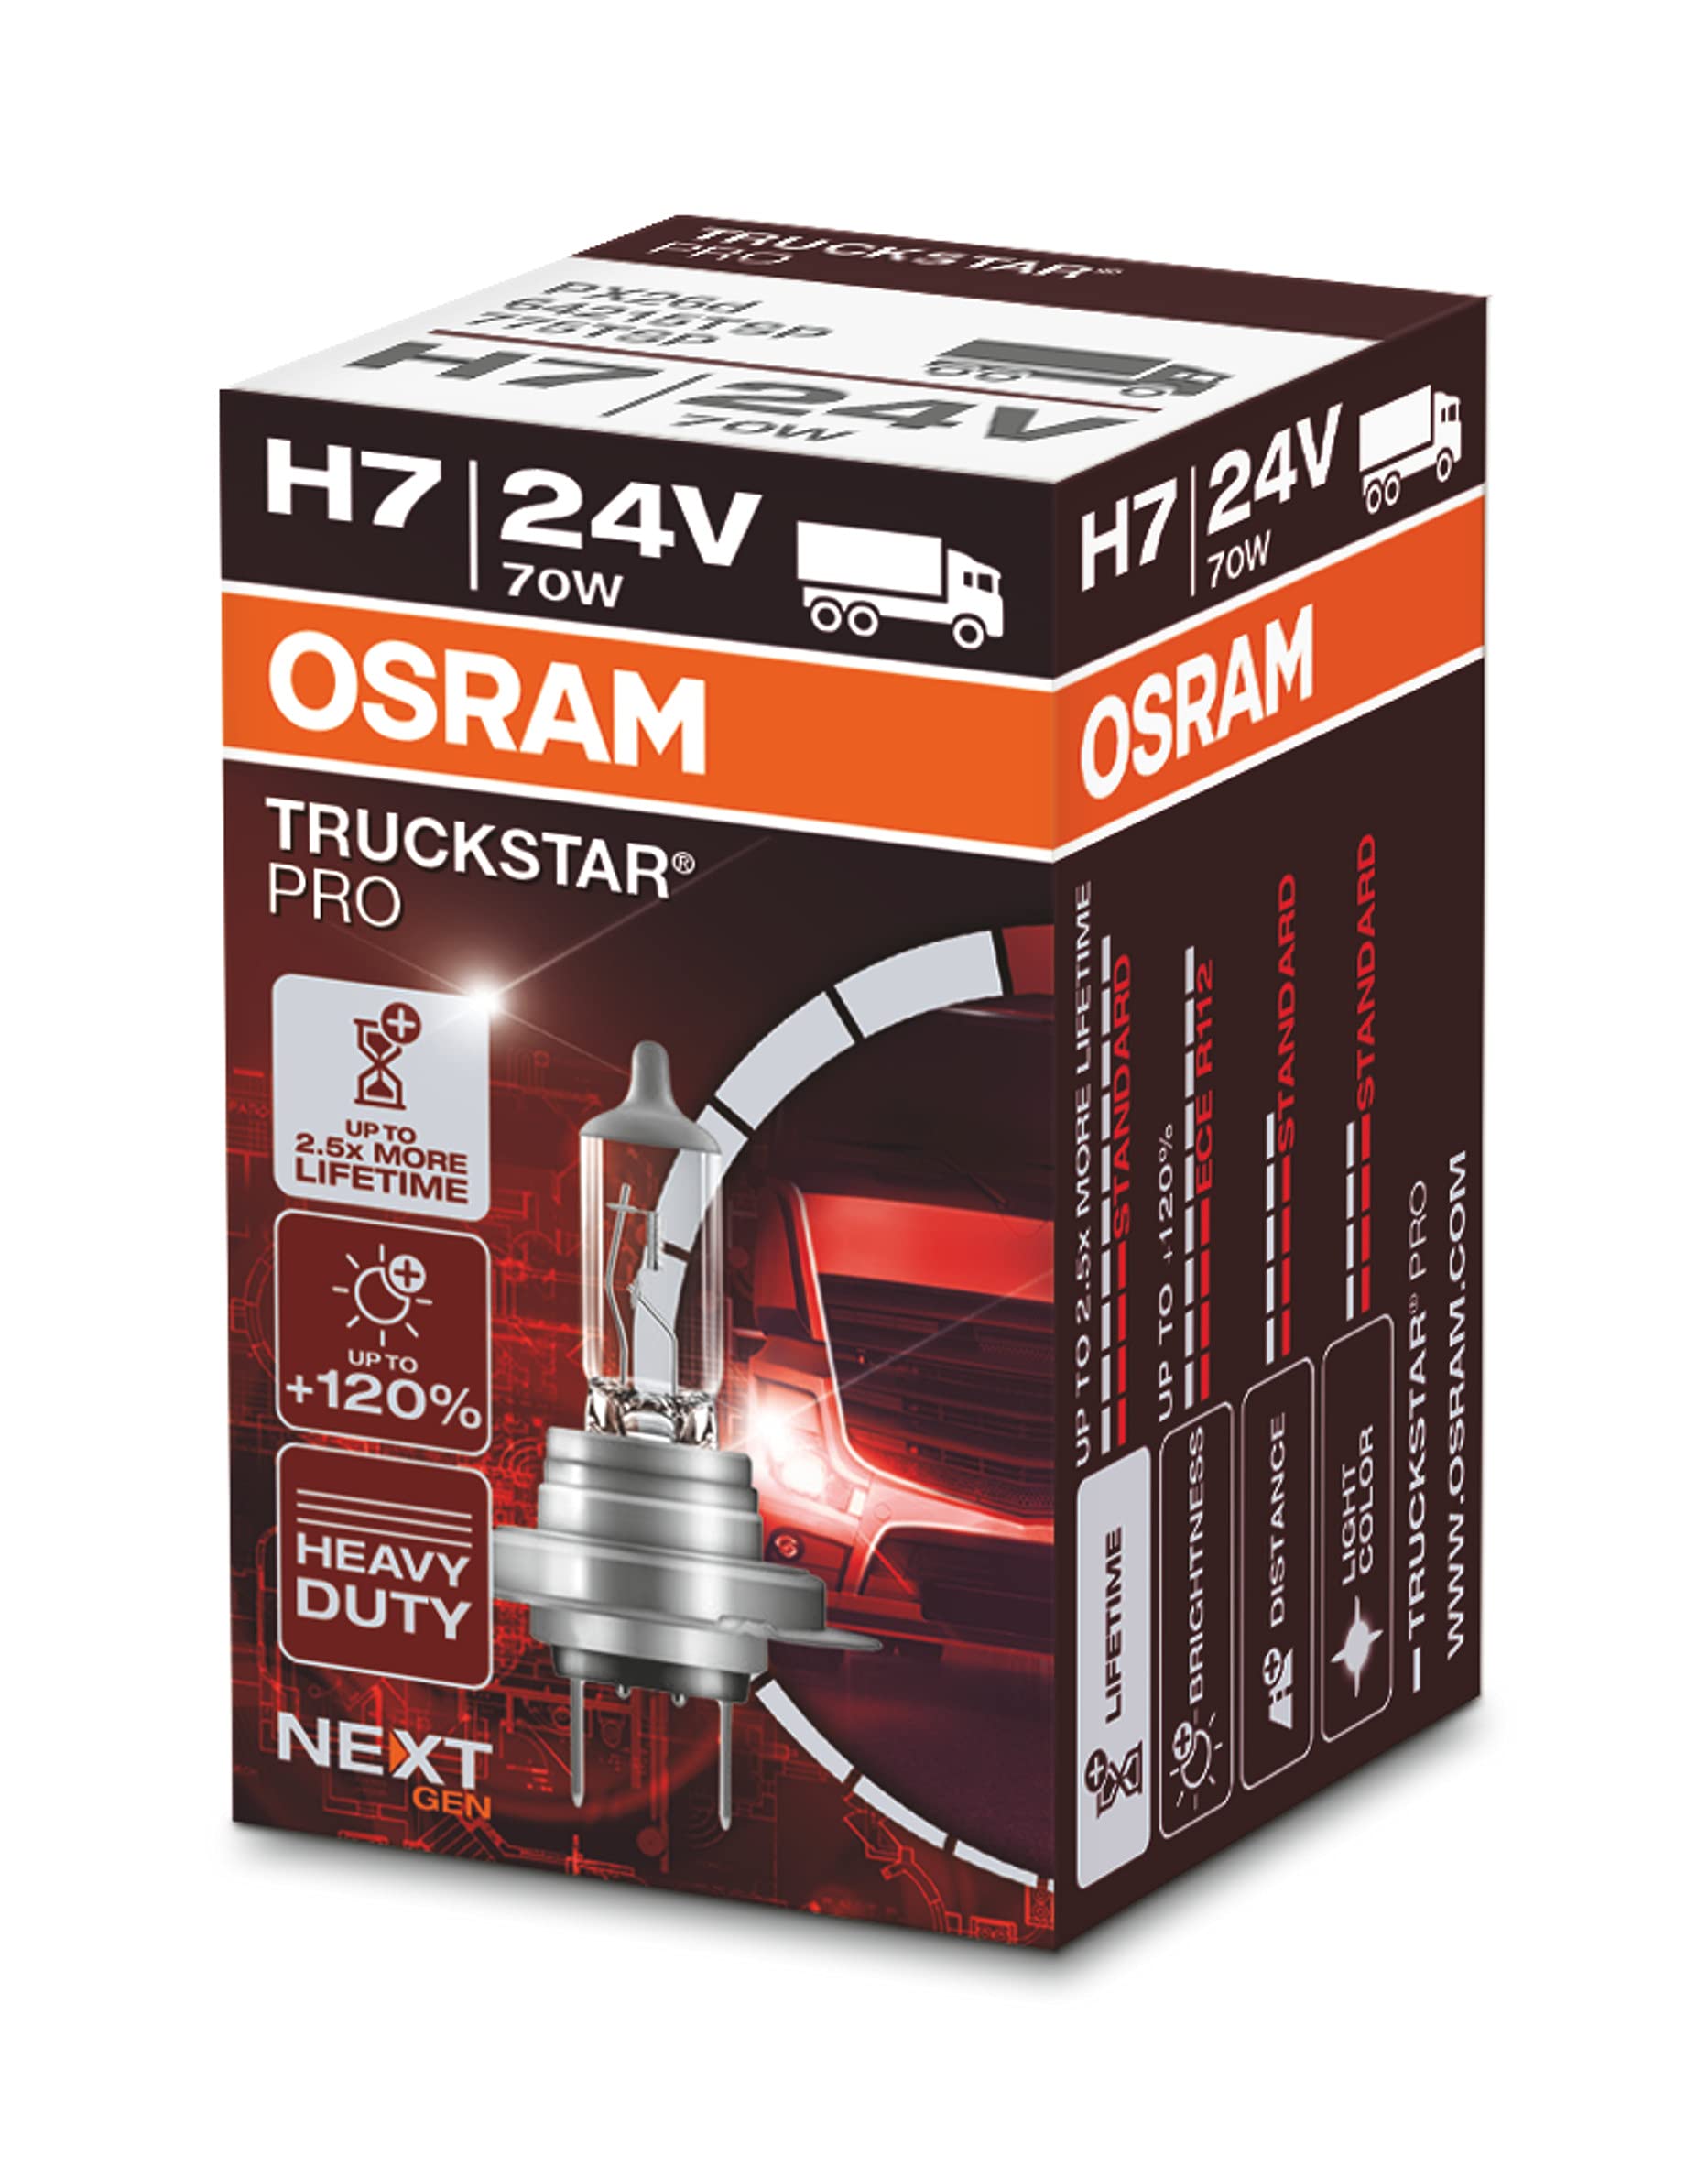 OSRAM 64215TSP Truckstar PRO H7, 120 Prozent mehr Helligkeit, Halogen Scheinwerferlampe, 24V LKW Lampe, Faltschachtel (1 Lampe) von Osram